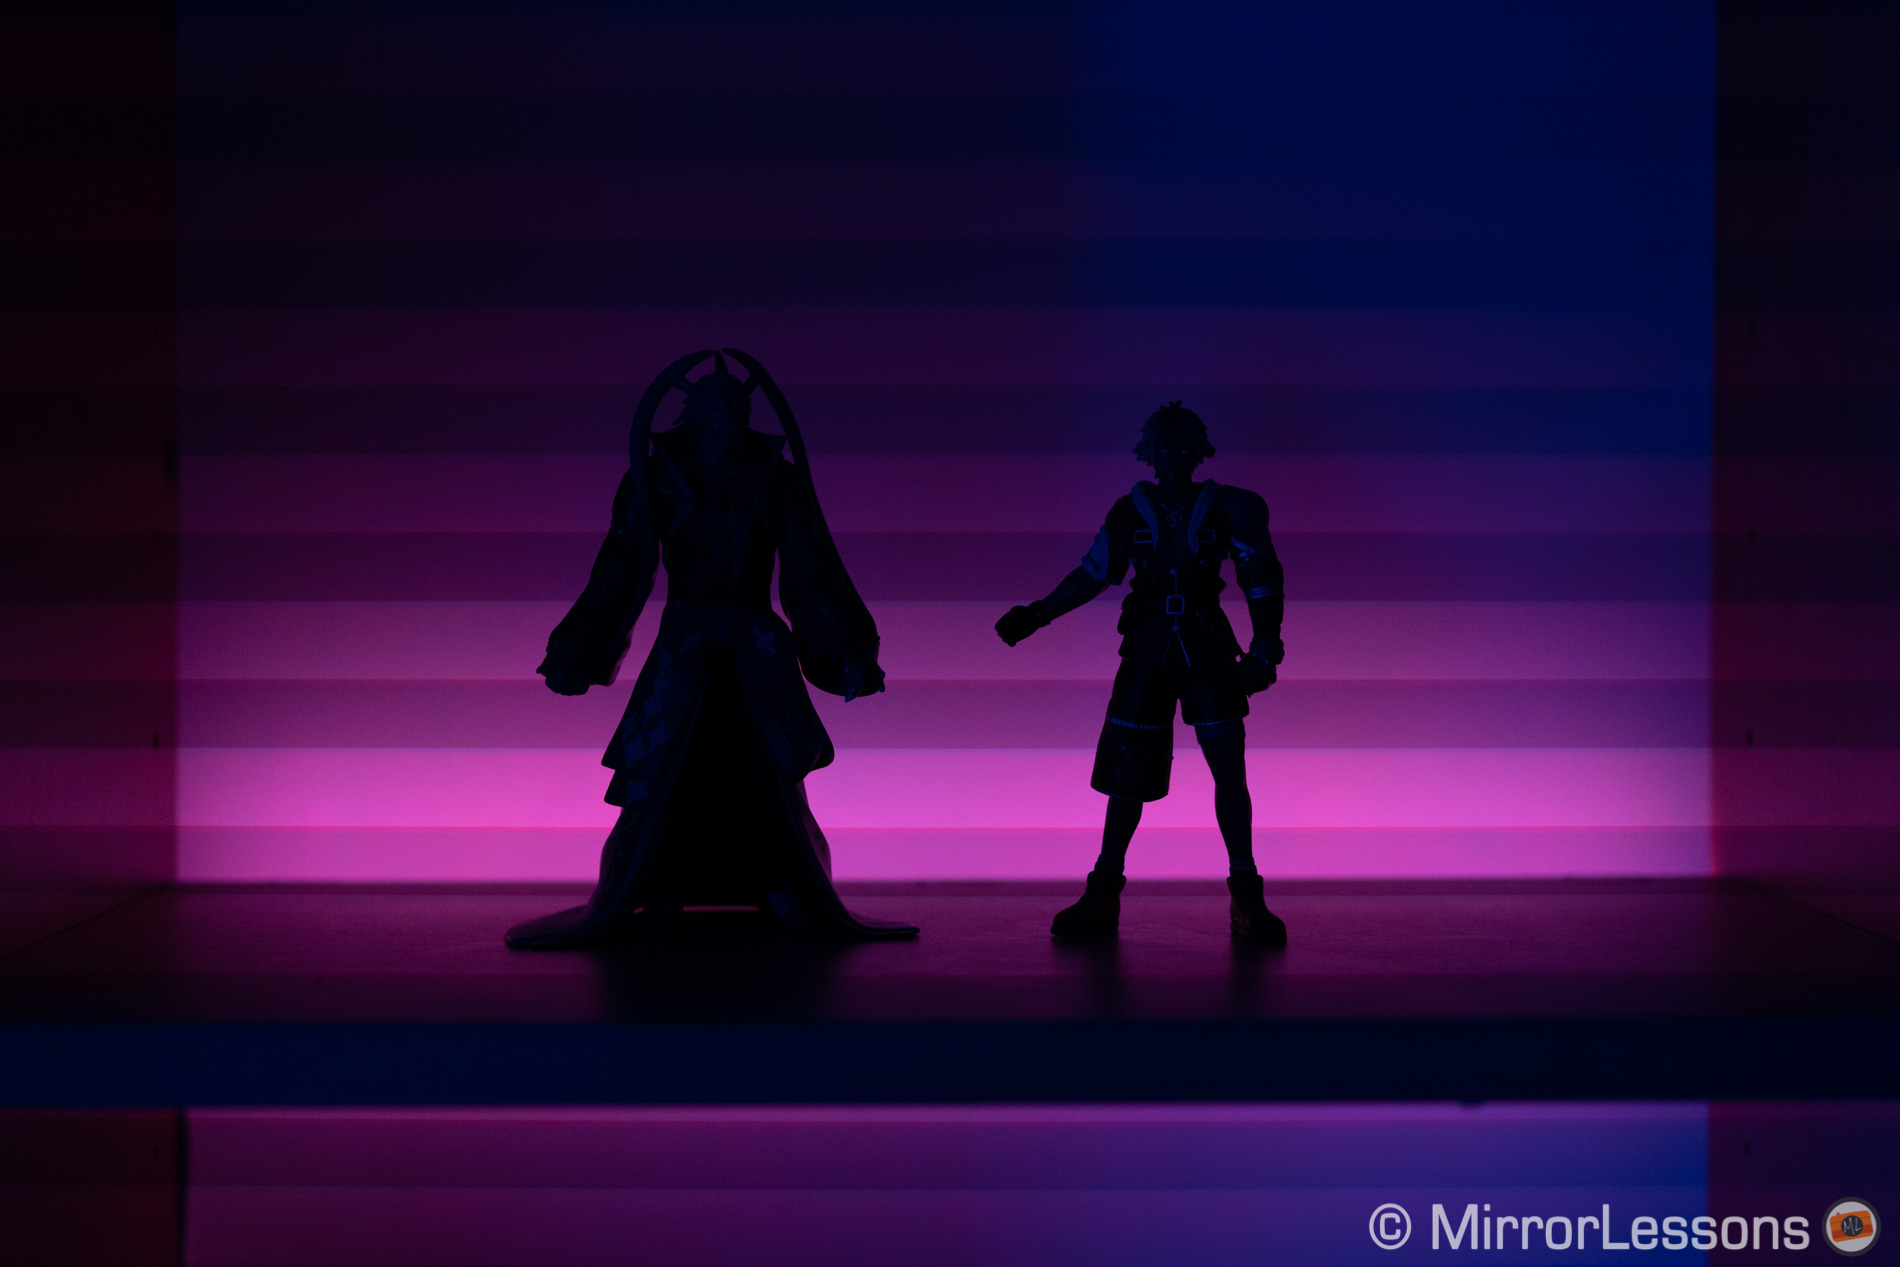 Sylwetka dwóch figur akcji, z fioletowym światłem LED w tle. Widoczne pasmo